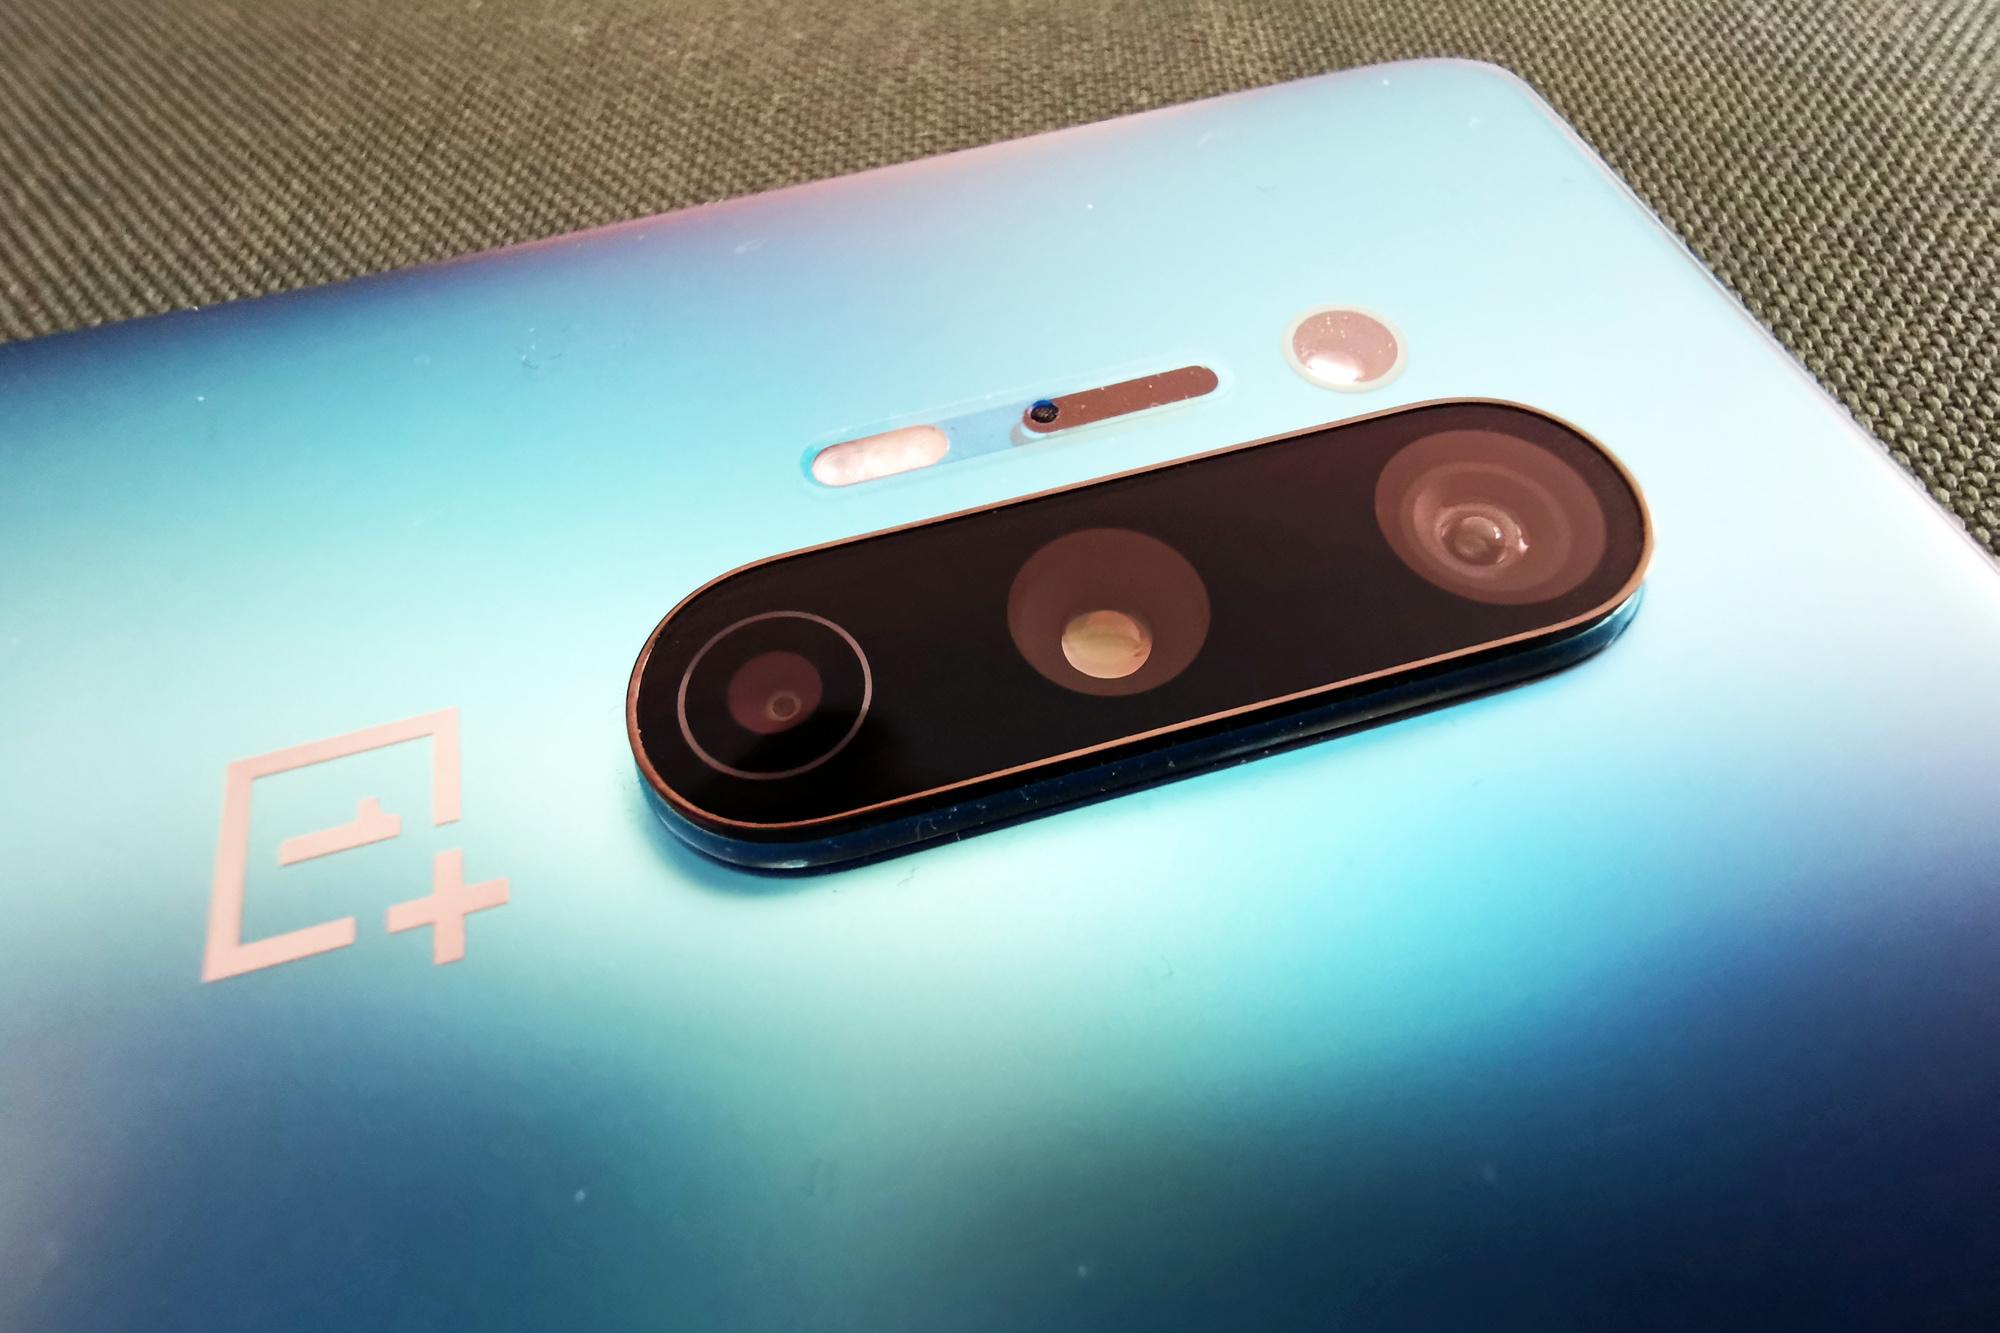 Het camera-eiland van de OnePlus 8 Pro.